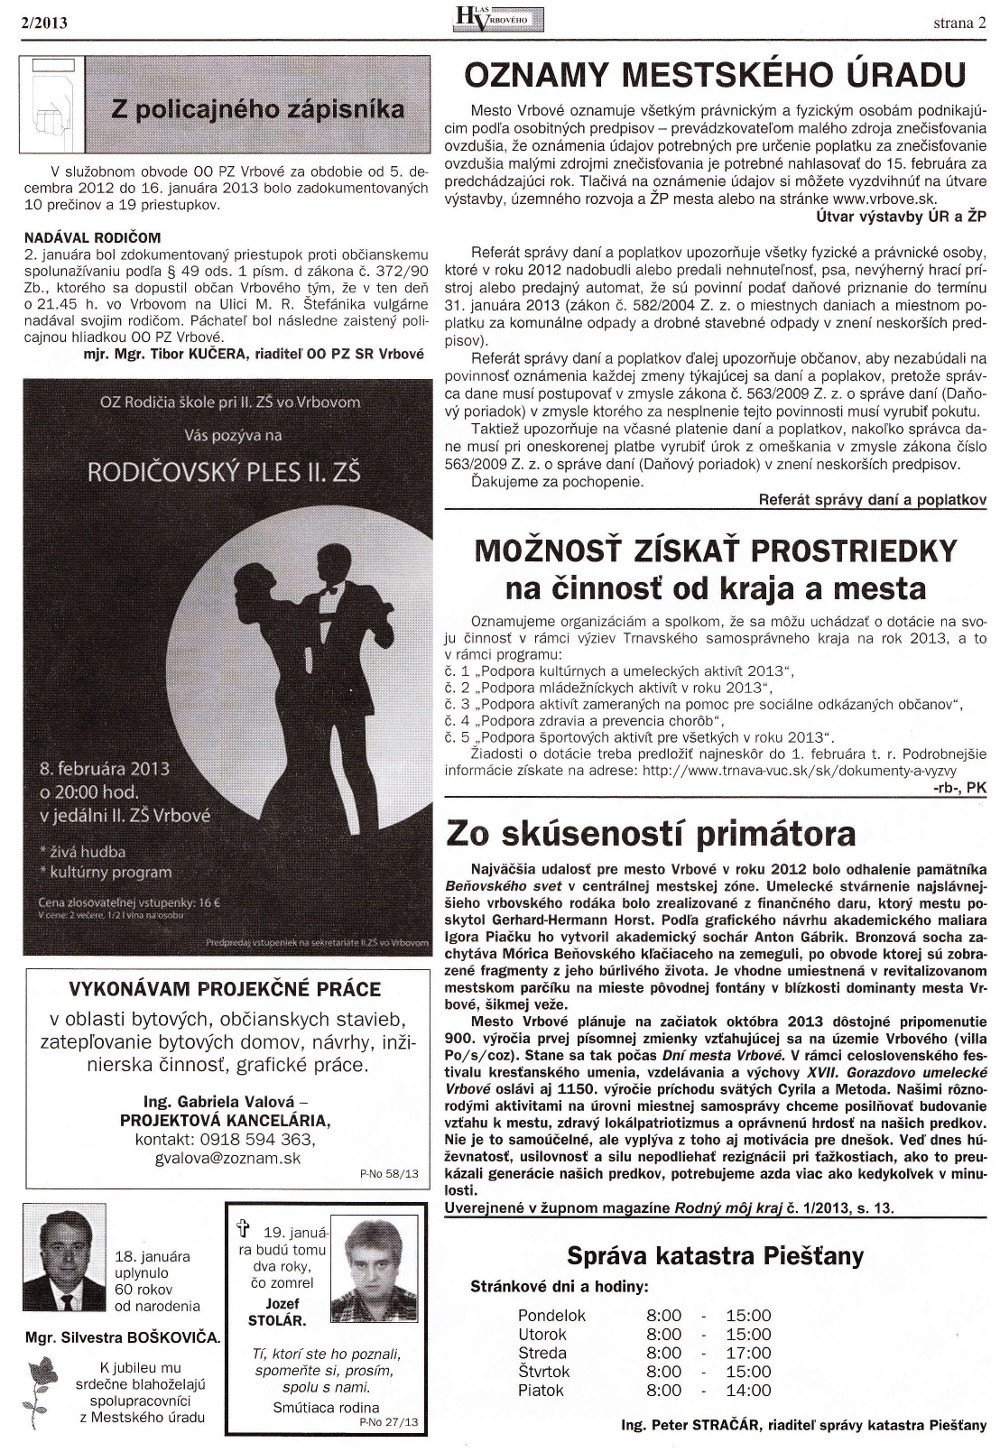 Hlas Vrbového 02/2013, strana 2